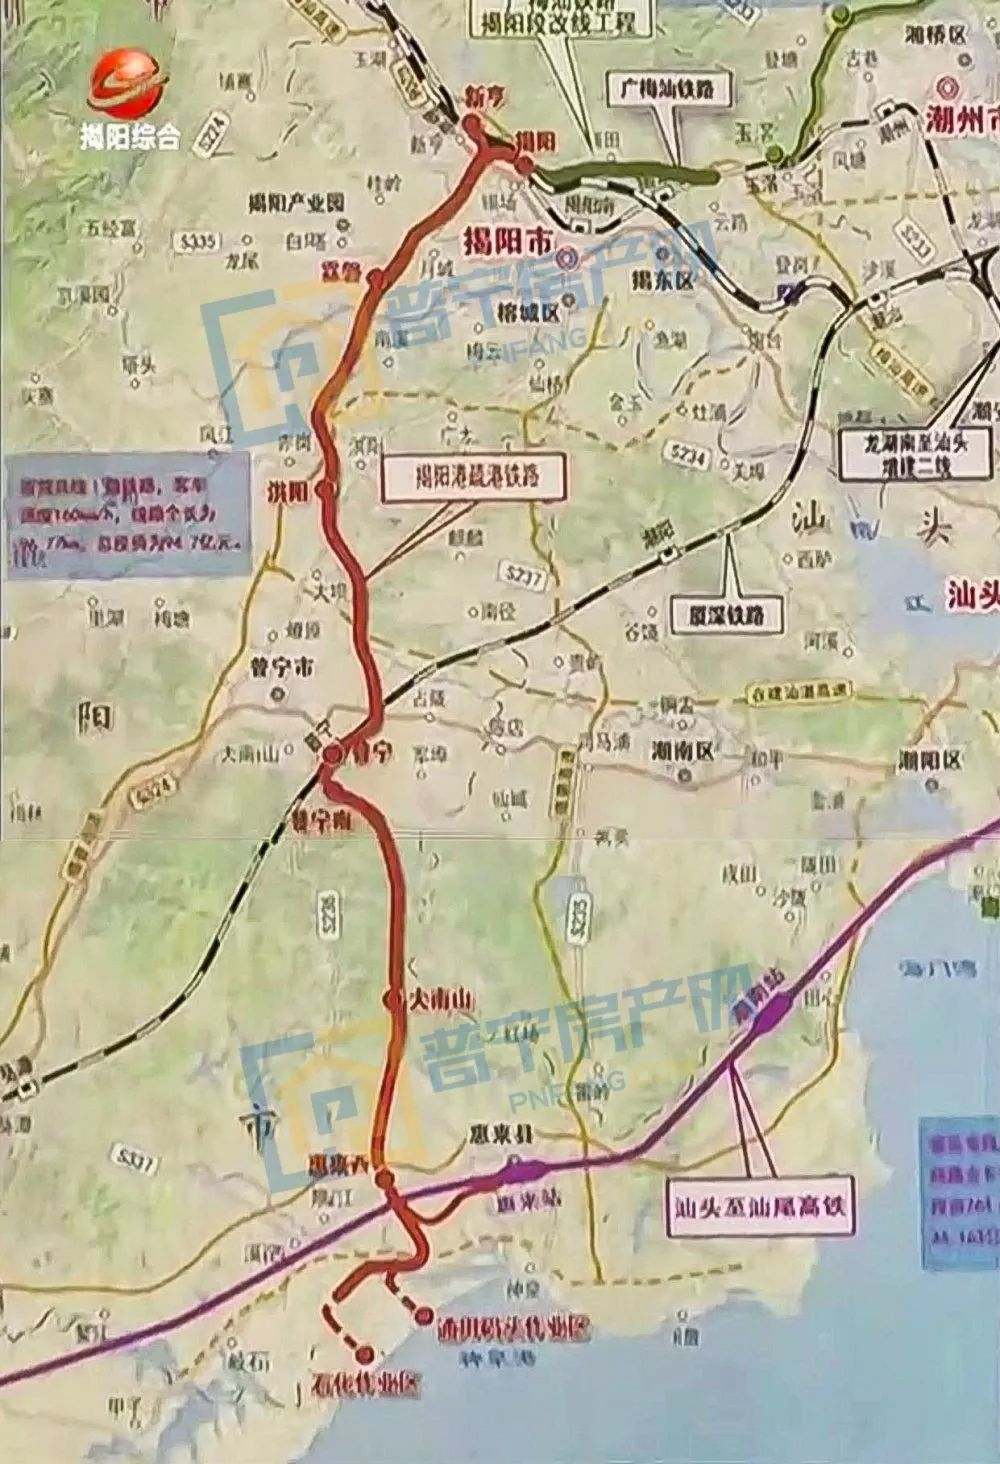 2,揭阳港疏港铁路 建设铁路96.